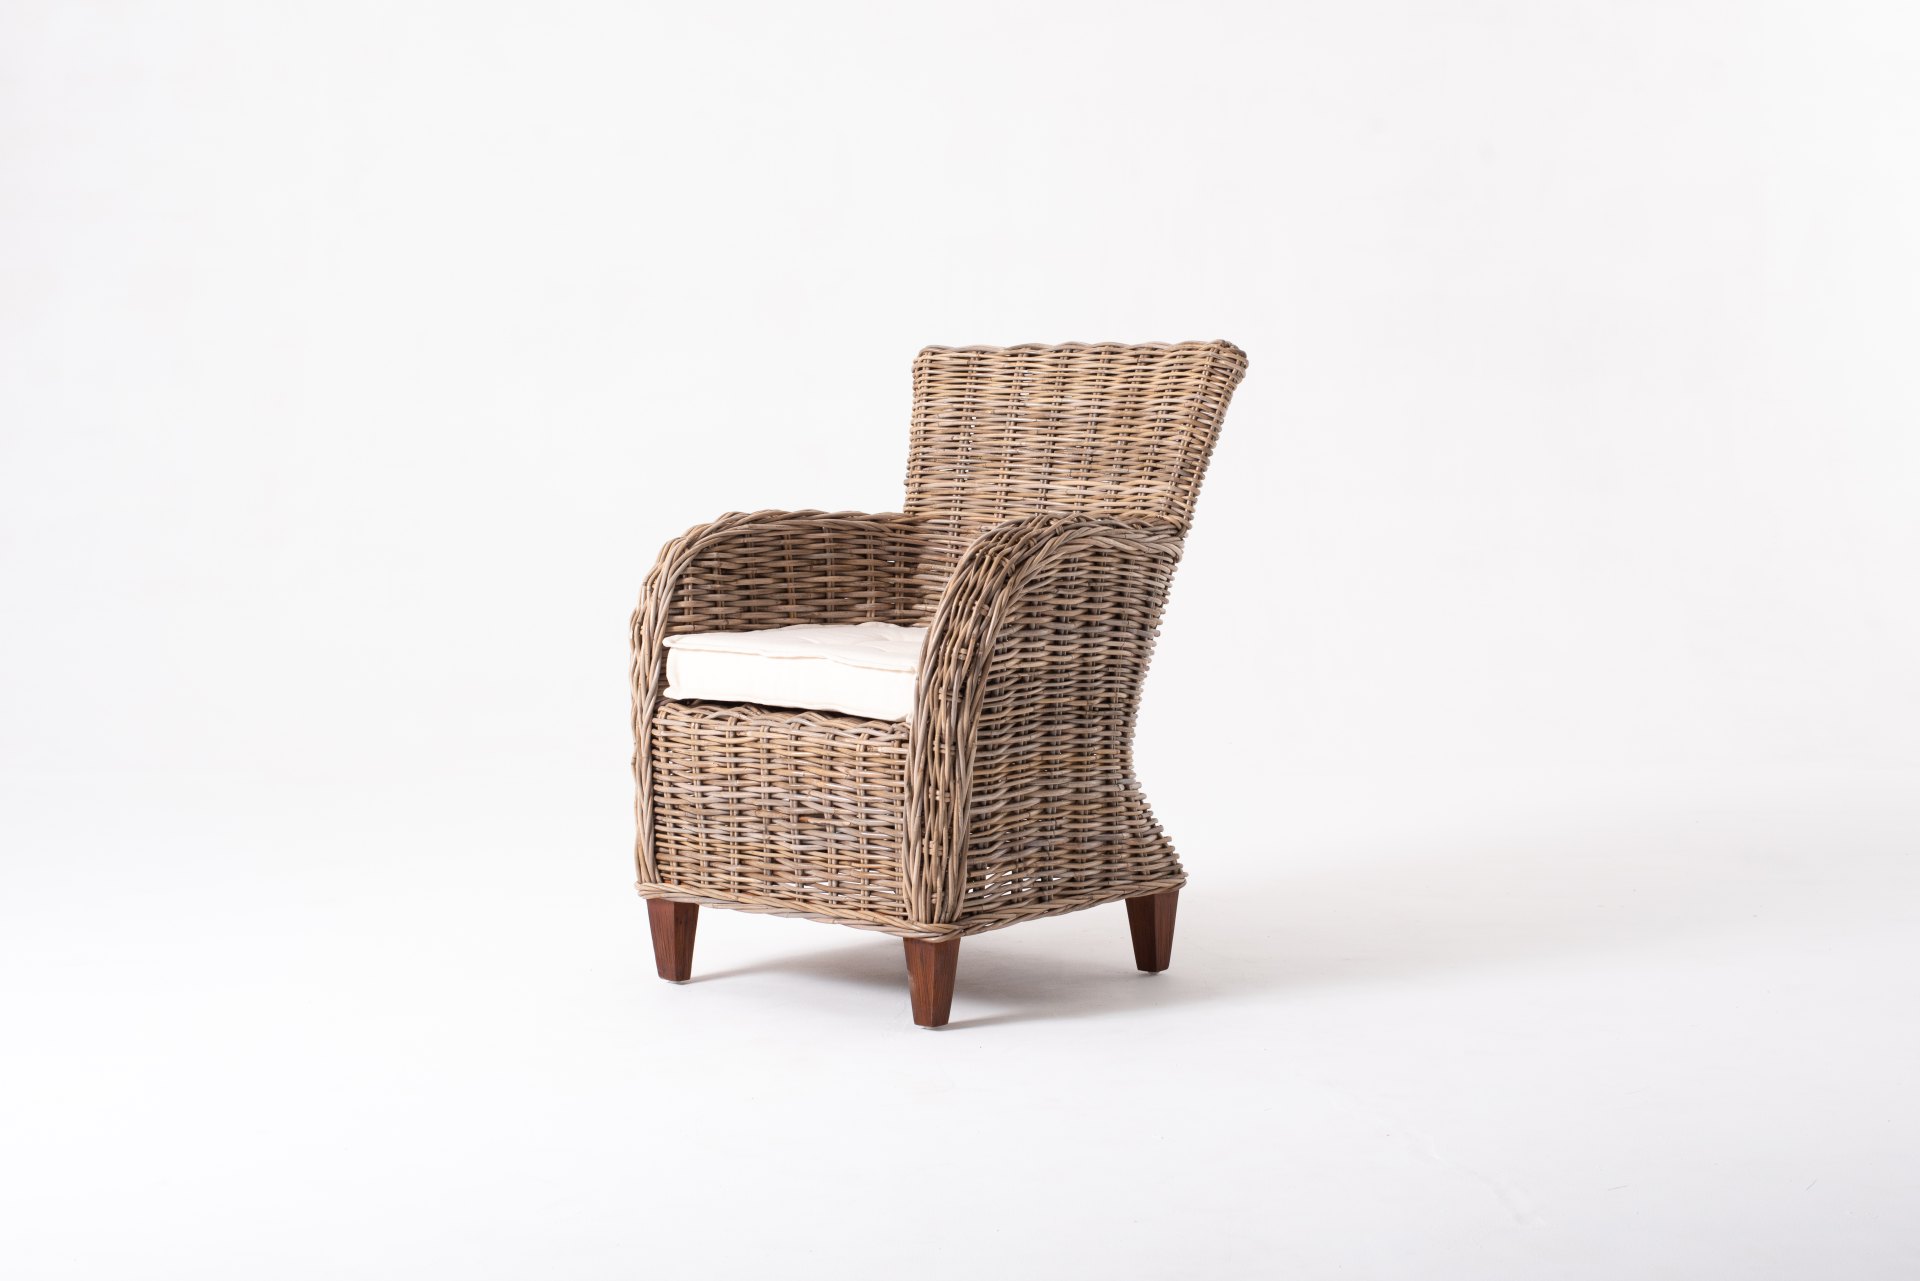 Der Armlehnstuhl Baroness überzeugt mit seinem Landhaus Stil. Gefertigt wurde er aus Kabu Rattan, welches einen braunen Farbton besitzt. Der Stuhl verfügt über eine Armlehne und ist im 2er-Set erhältlich. Die Sitzhöhe beträgt beträgt 40 cm.